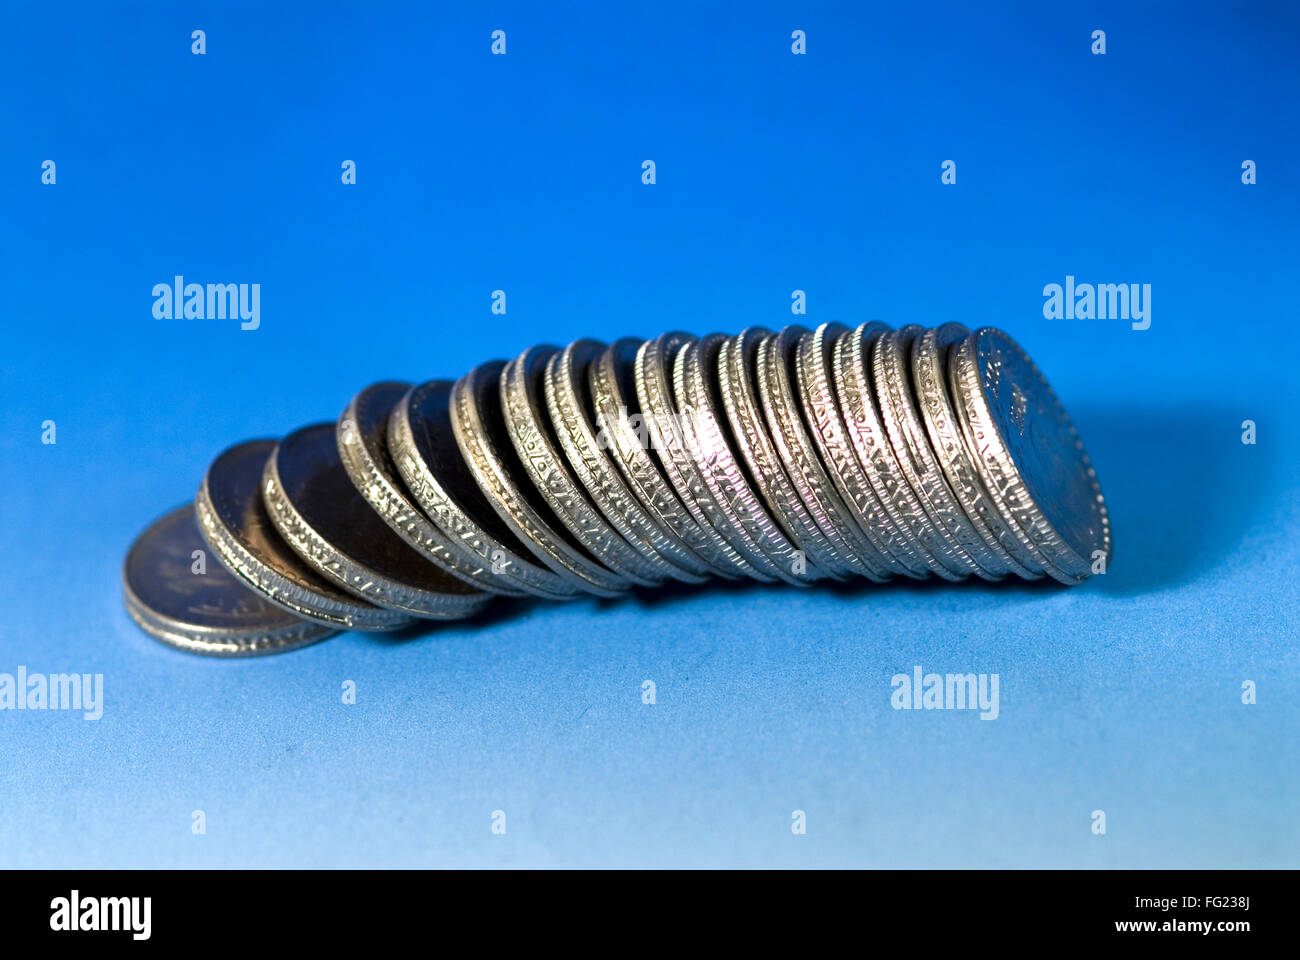 Konzept, arrangieren Wachstum indischen fünf Rupien Münzen hintereinander auf weißem Hintergrund Stockfoto